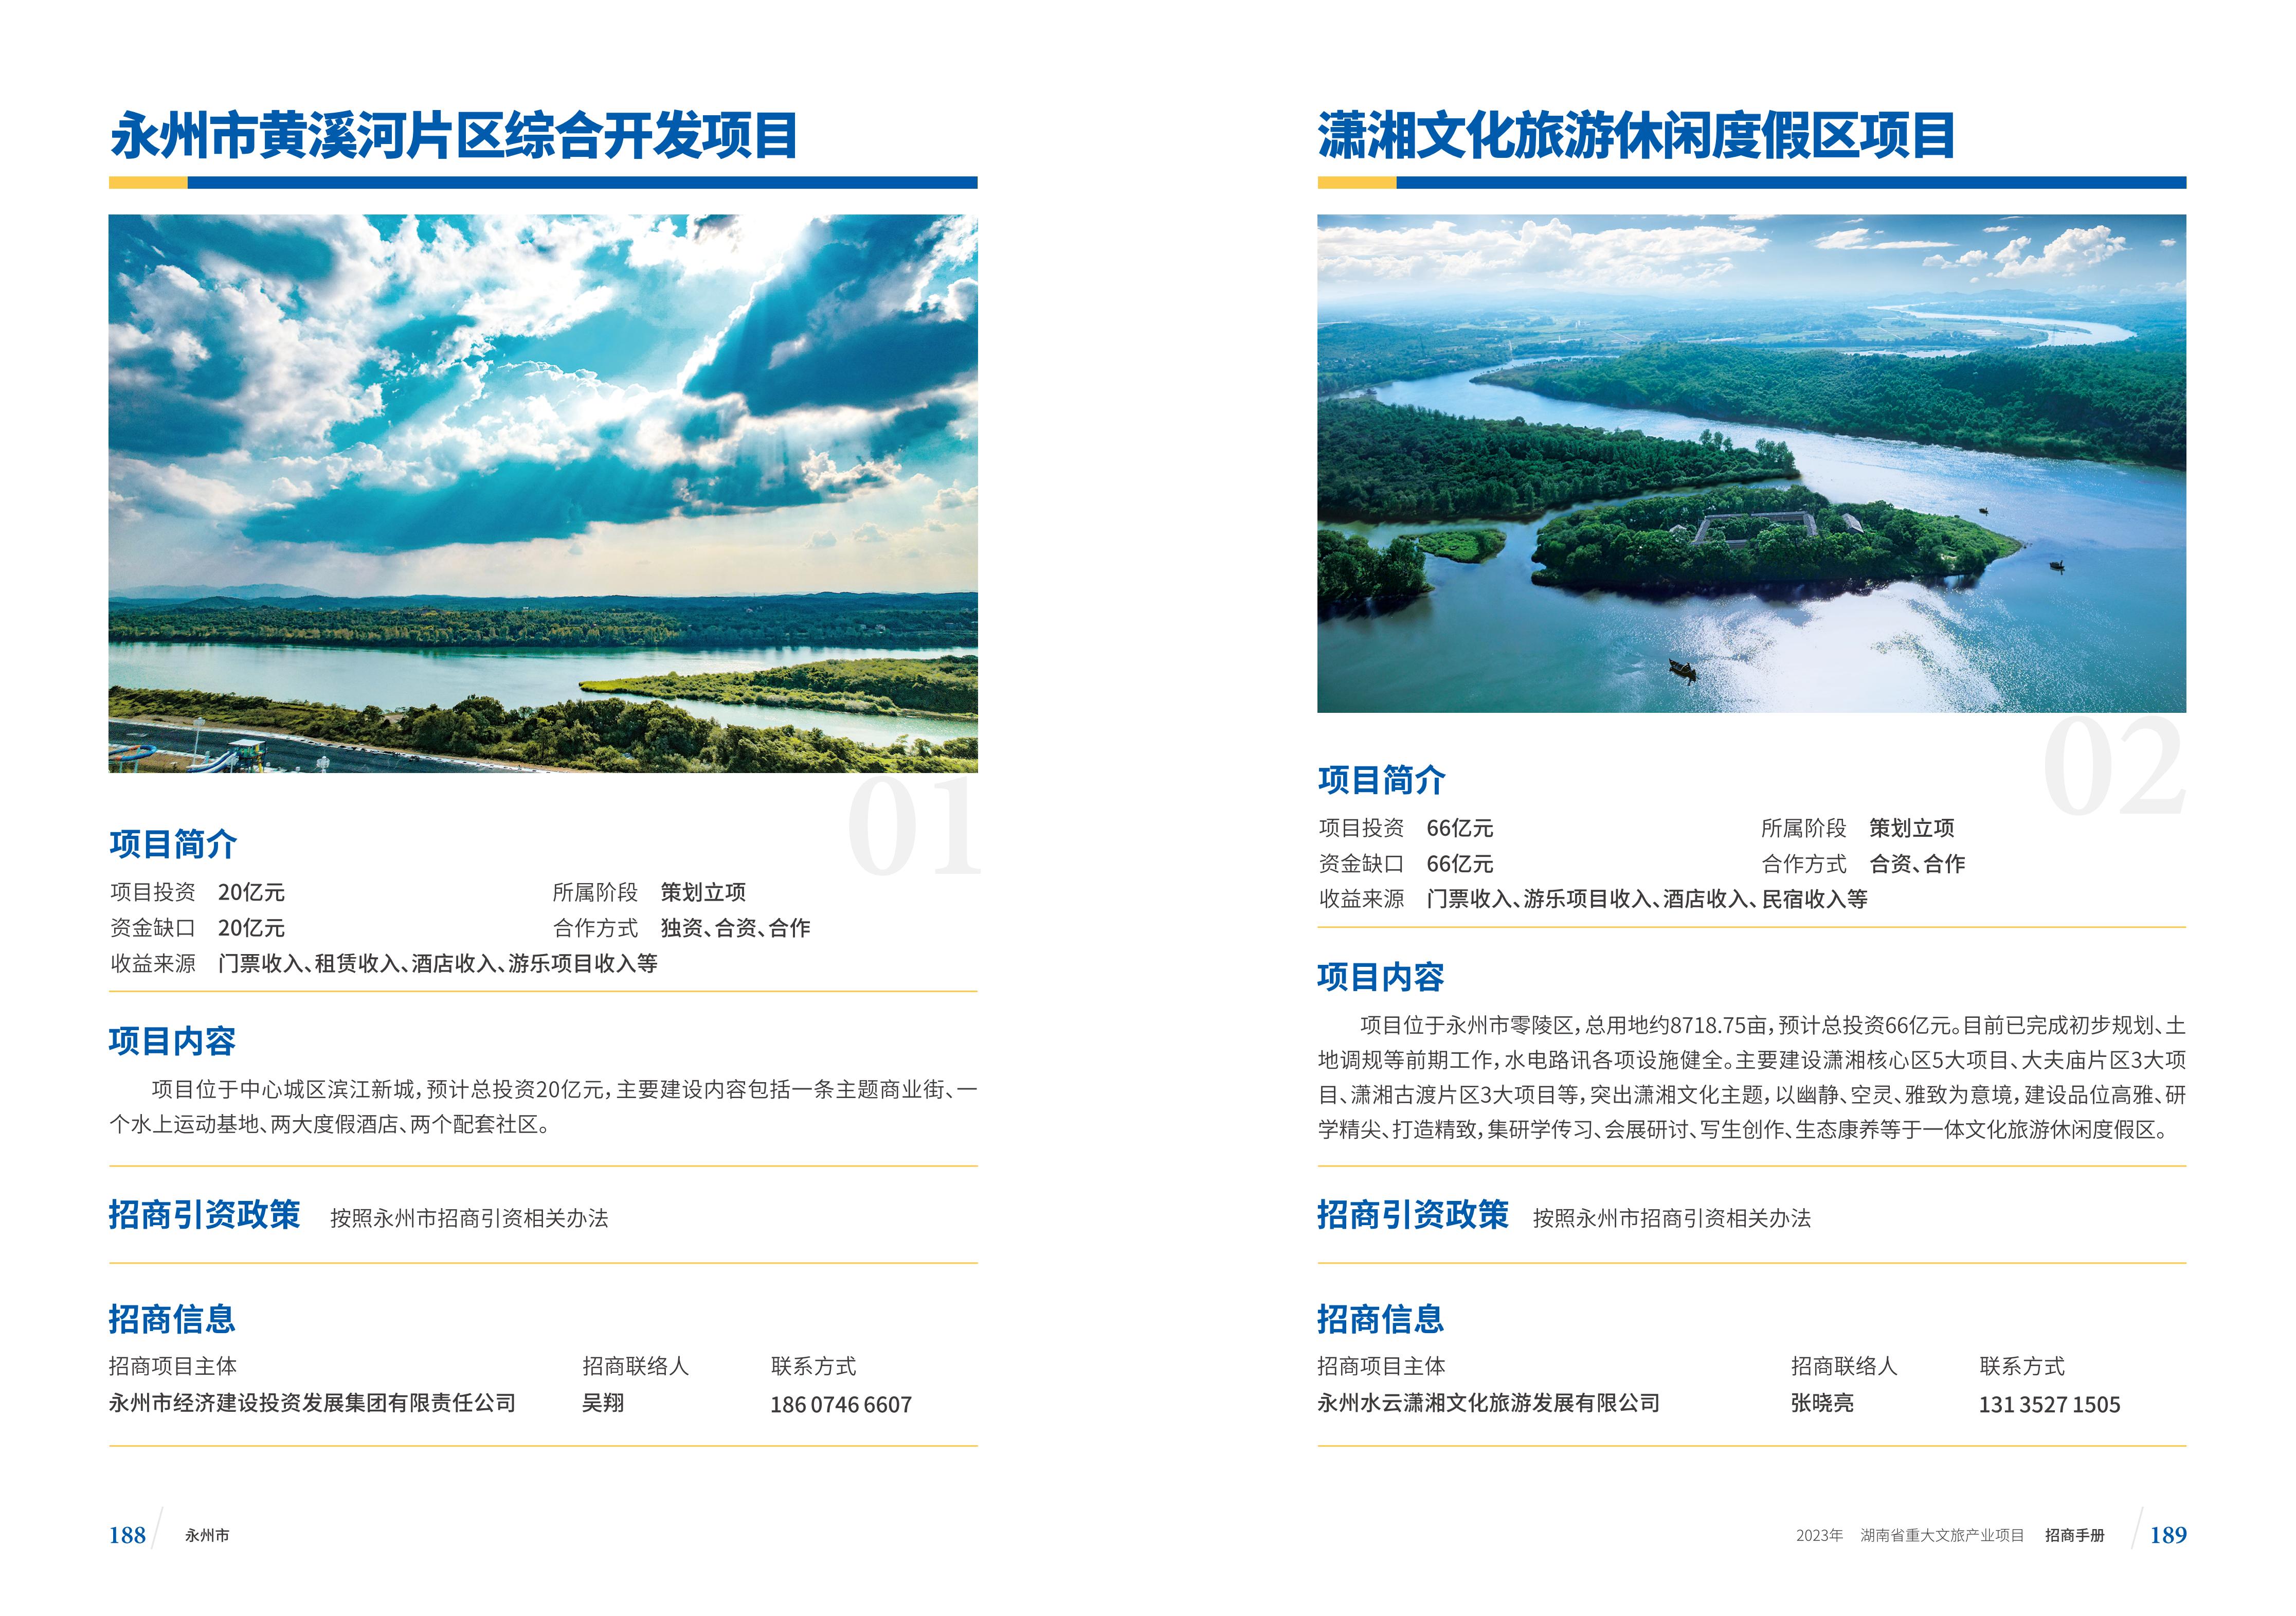 湖南省重大文旅产业项目招手册线上链接版_102.jpg